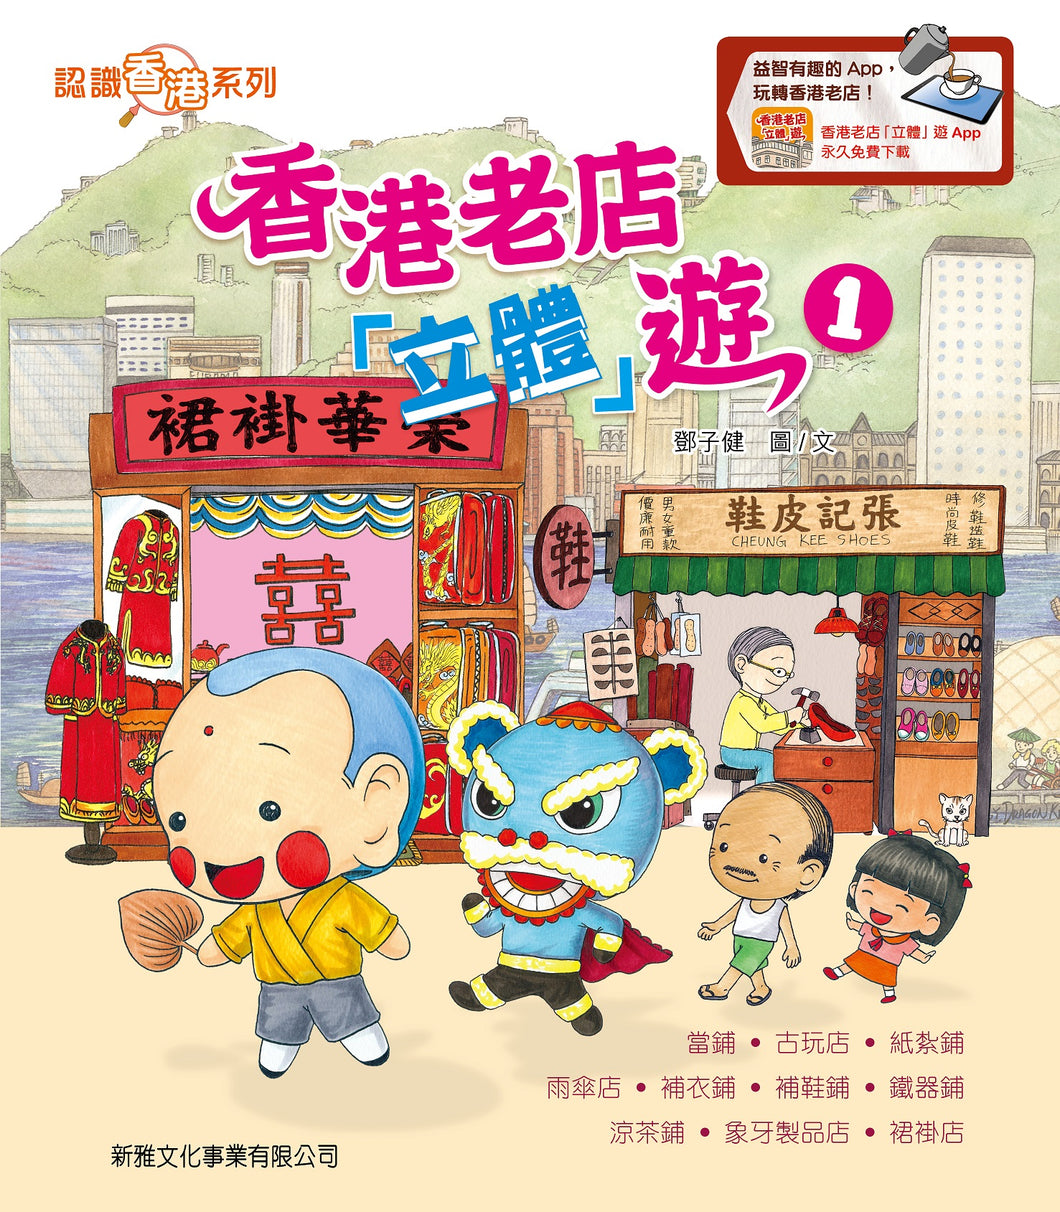 Tour of Hong Kong Old Shops (3D Pop-Up) - Book 1 • 香港老店「立體」遊－1［認識香港系列］